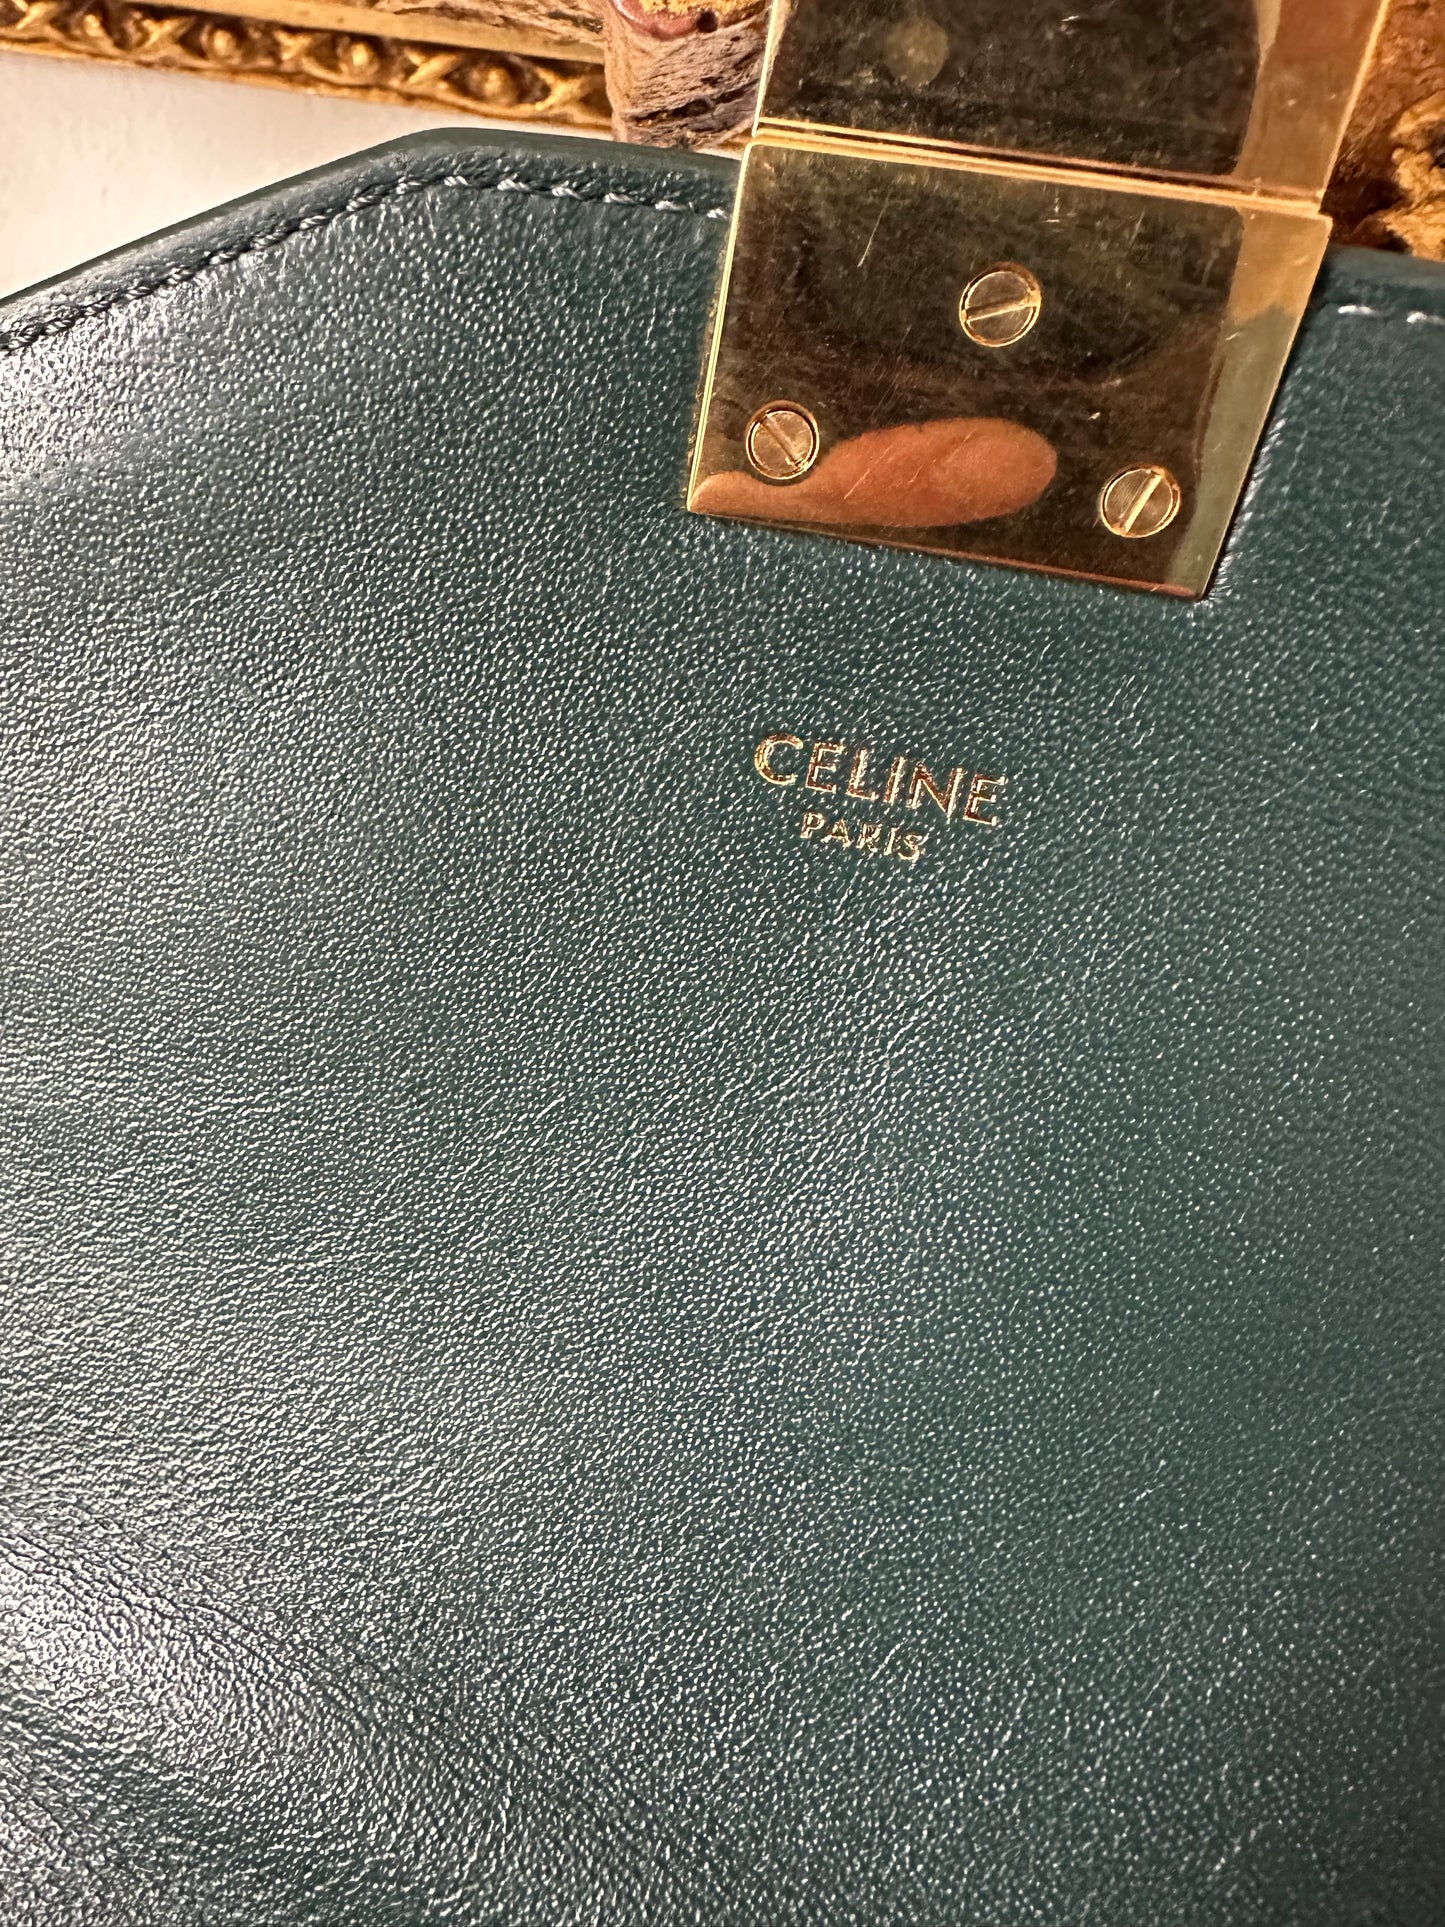 Celine C bag